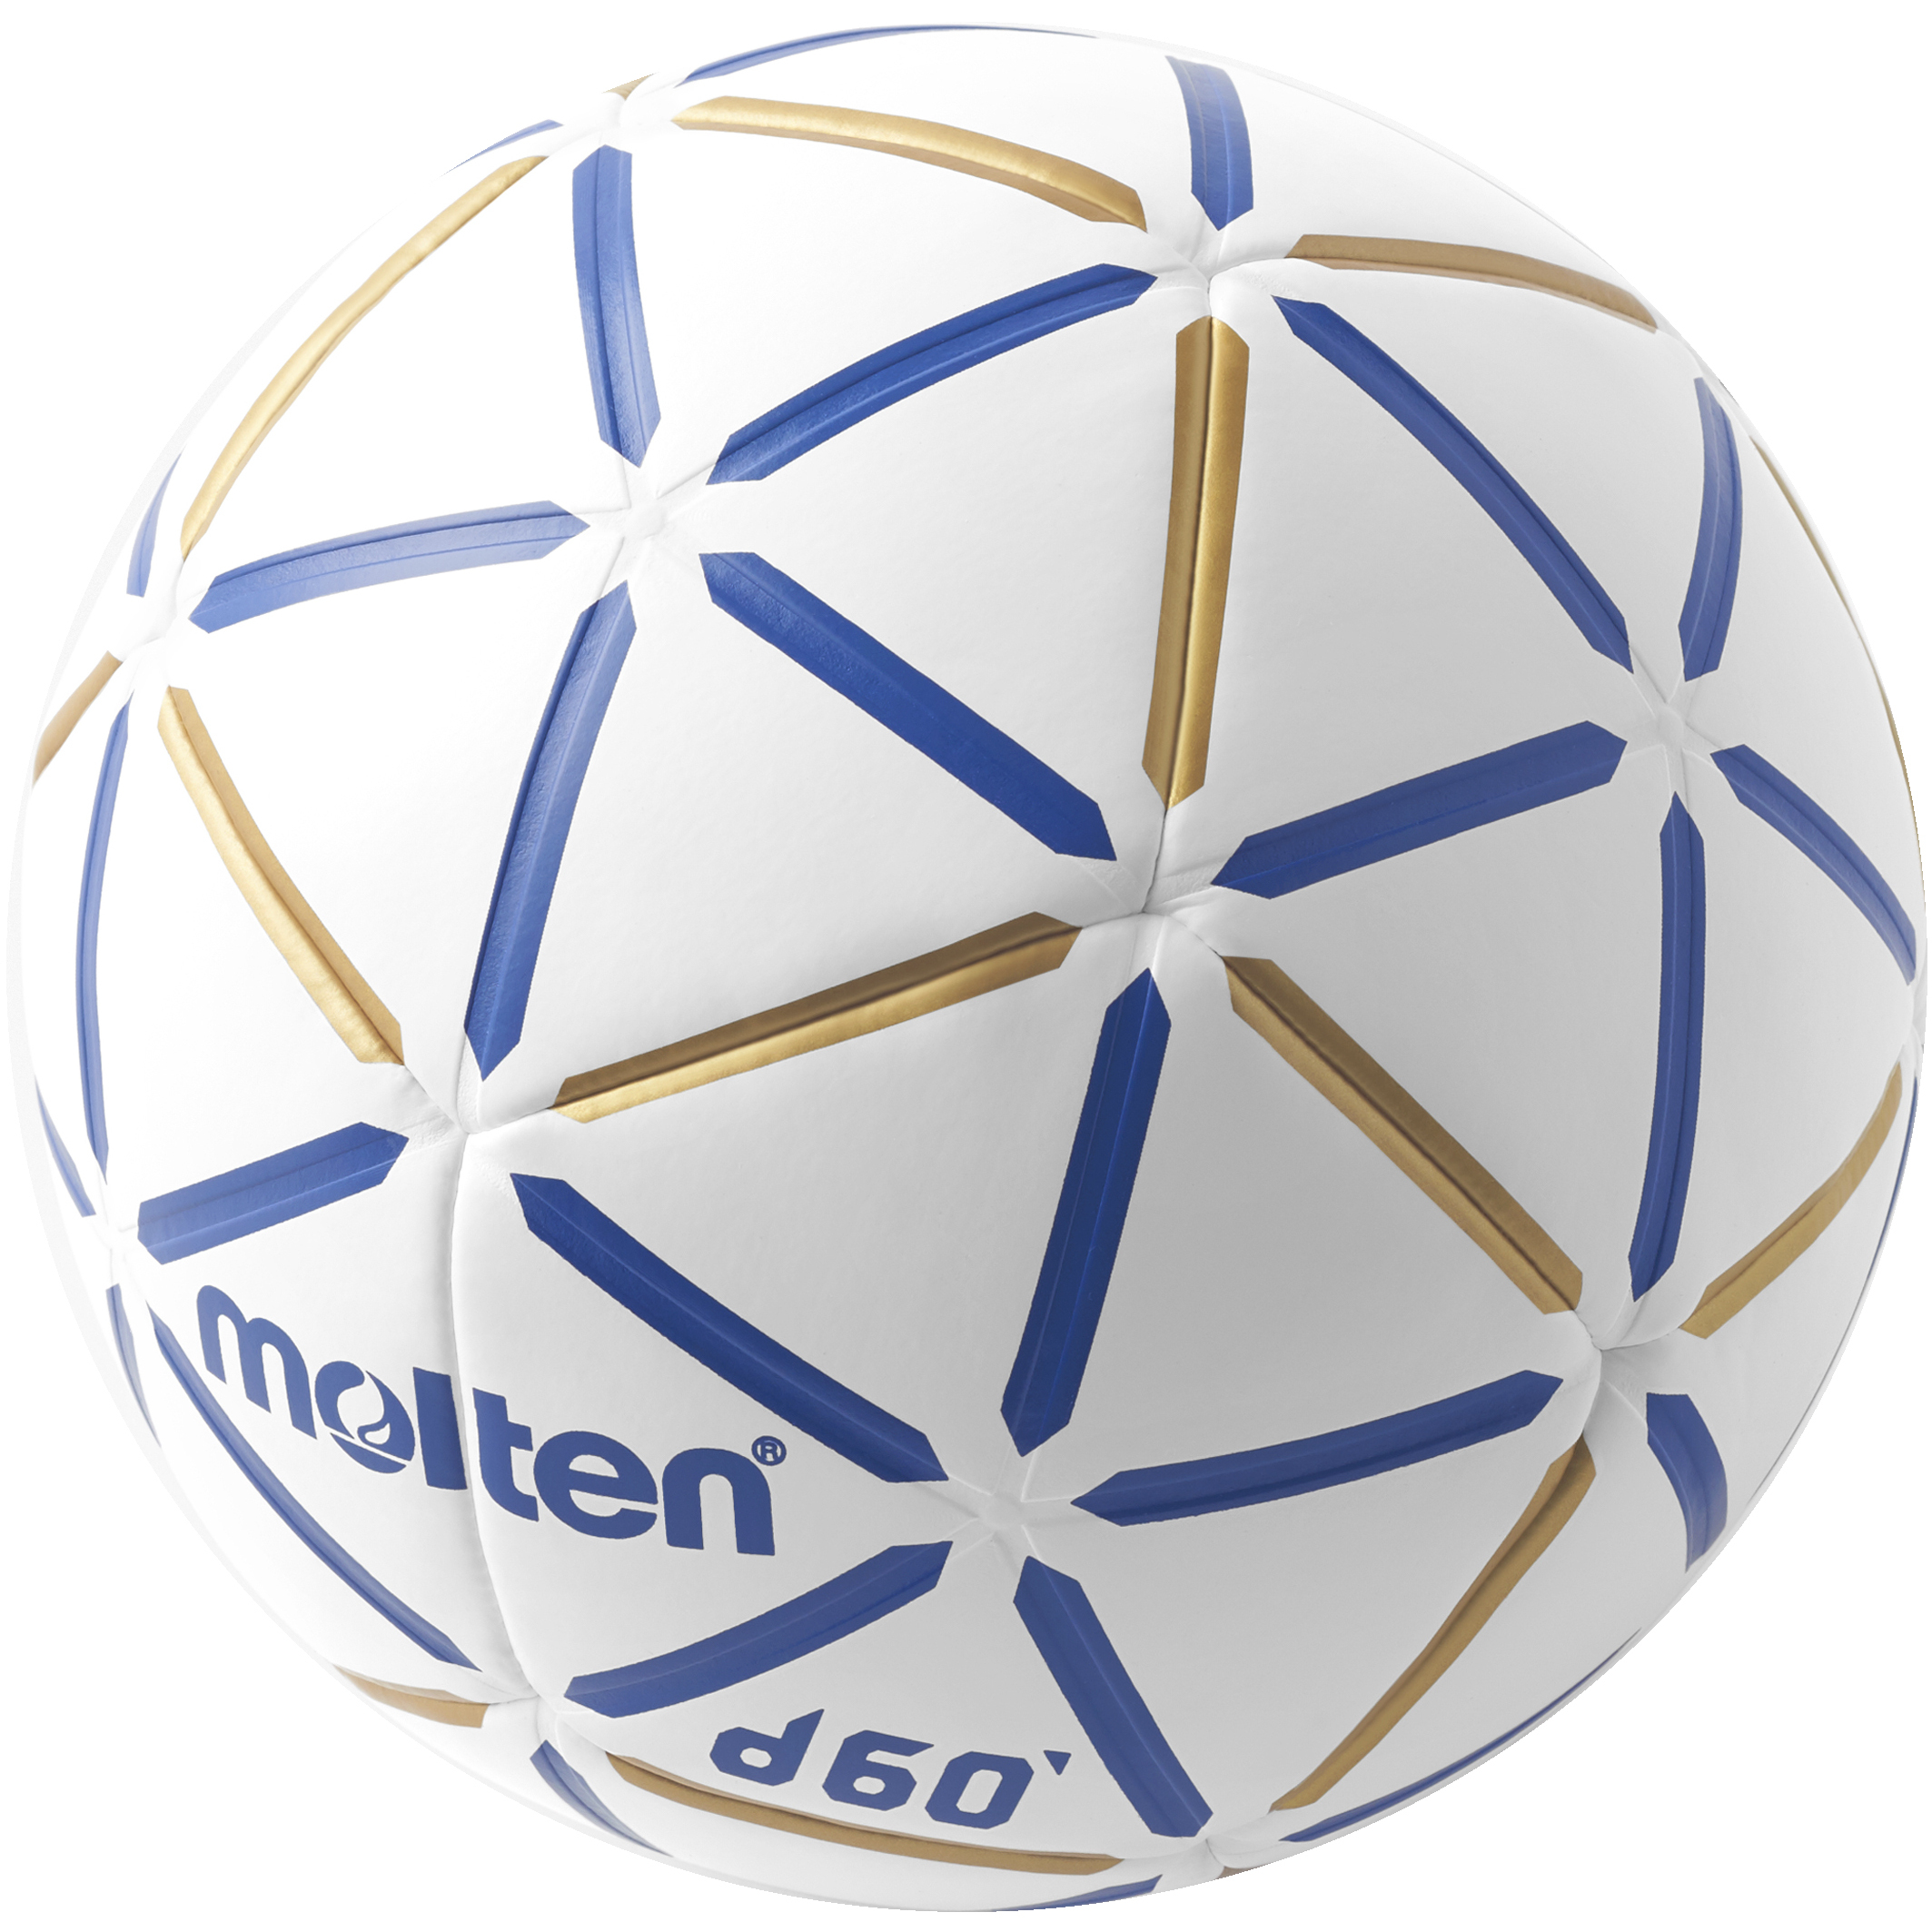 Balón Balonmano Molten D60